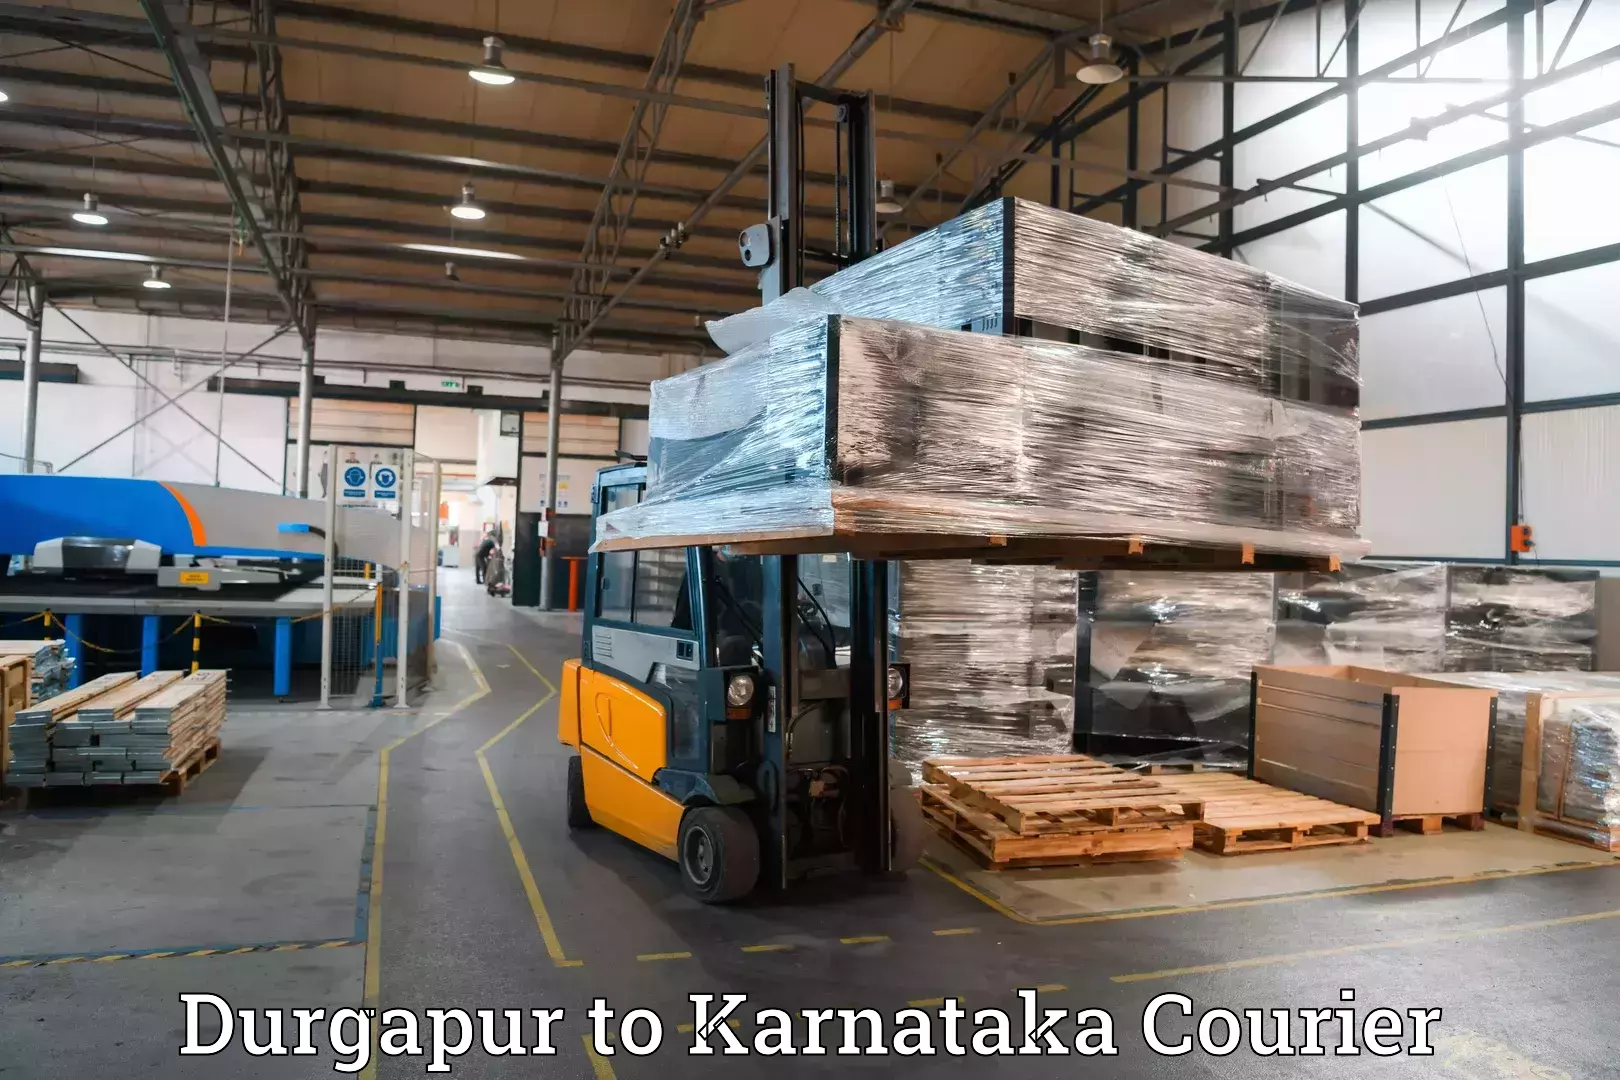 Luggage transport consultancy Durgapur to Manvi